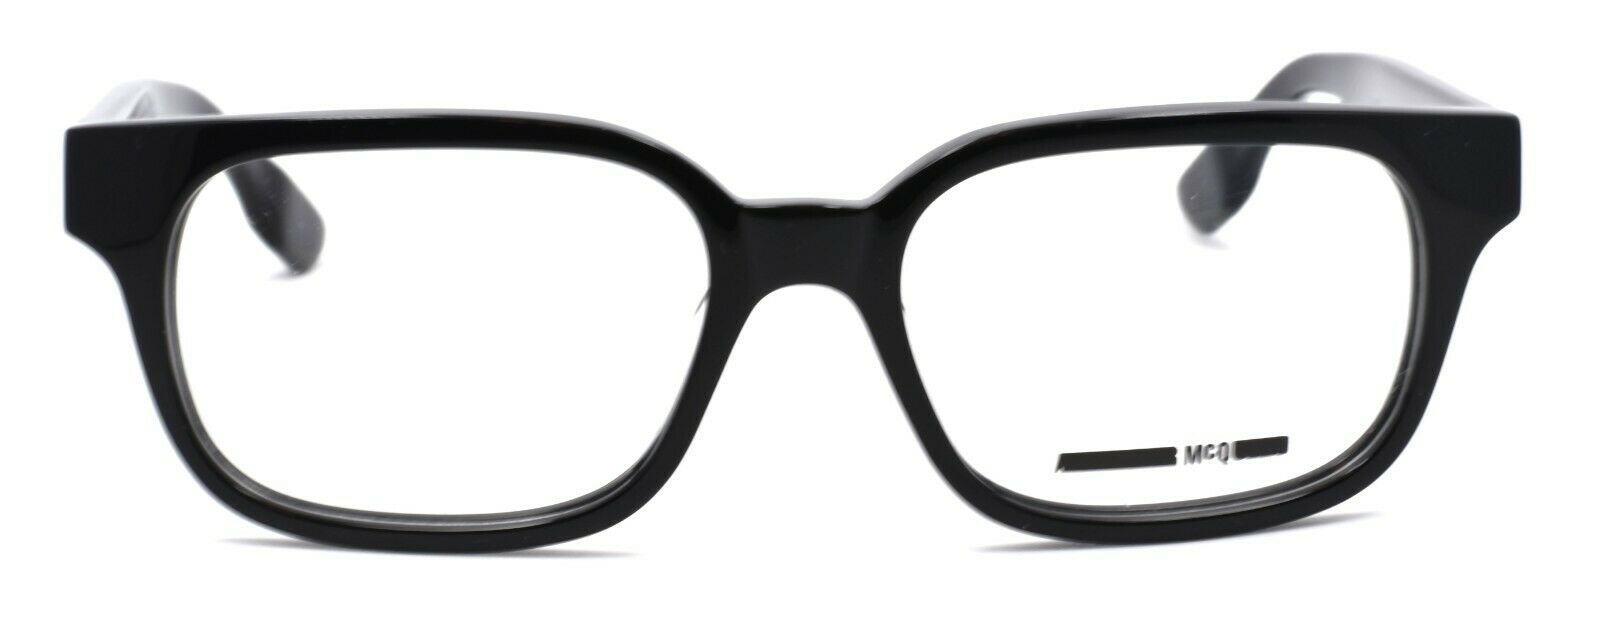 2-McQ Alexander McQueen MQ0031O 001 Unisex Eyeglasses Frames 51-17-145 Black-889652011394-IKSpecs